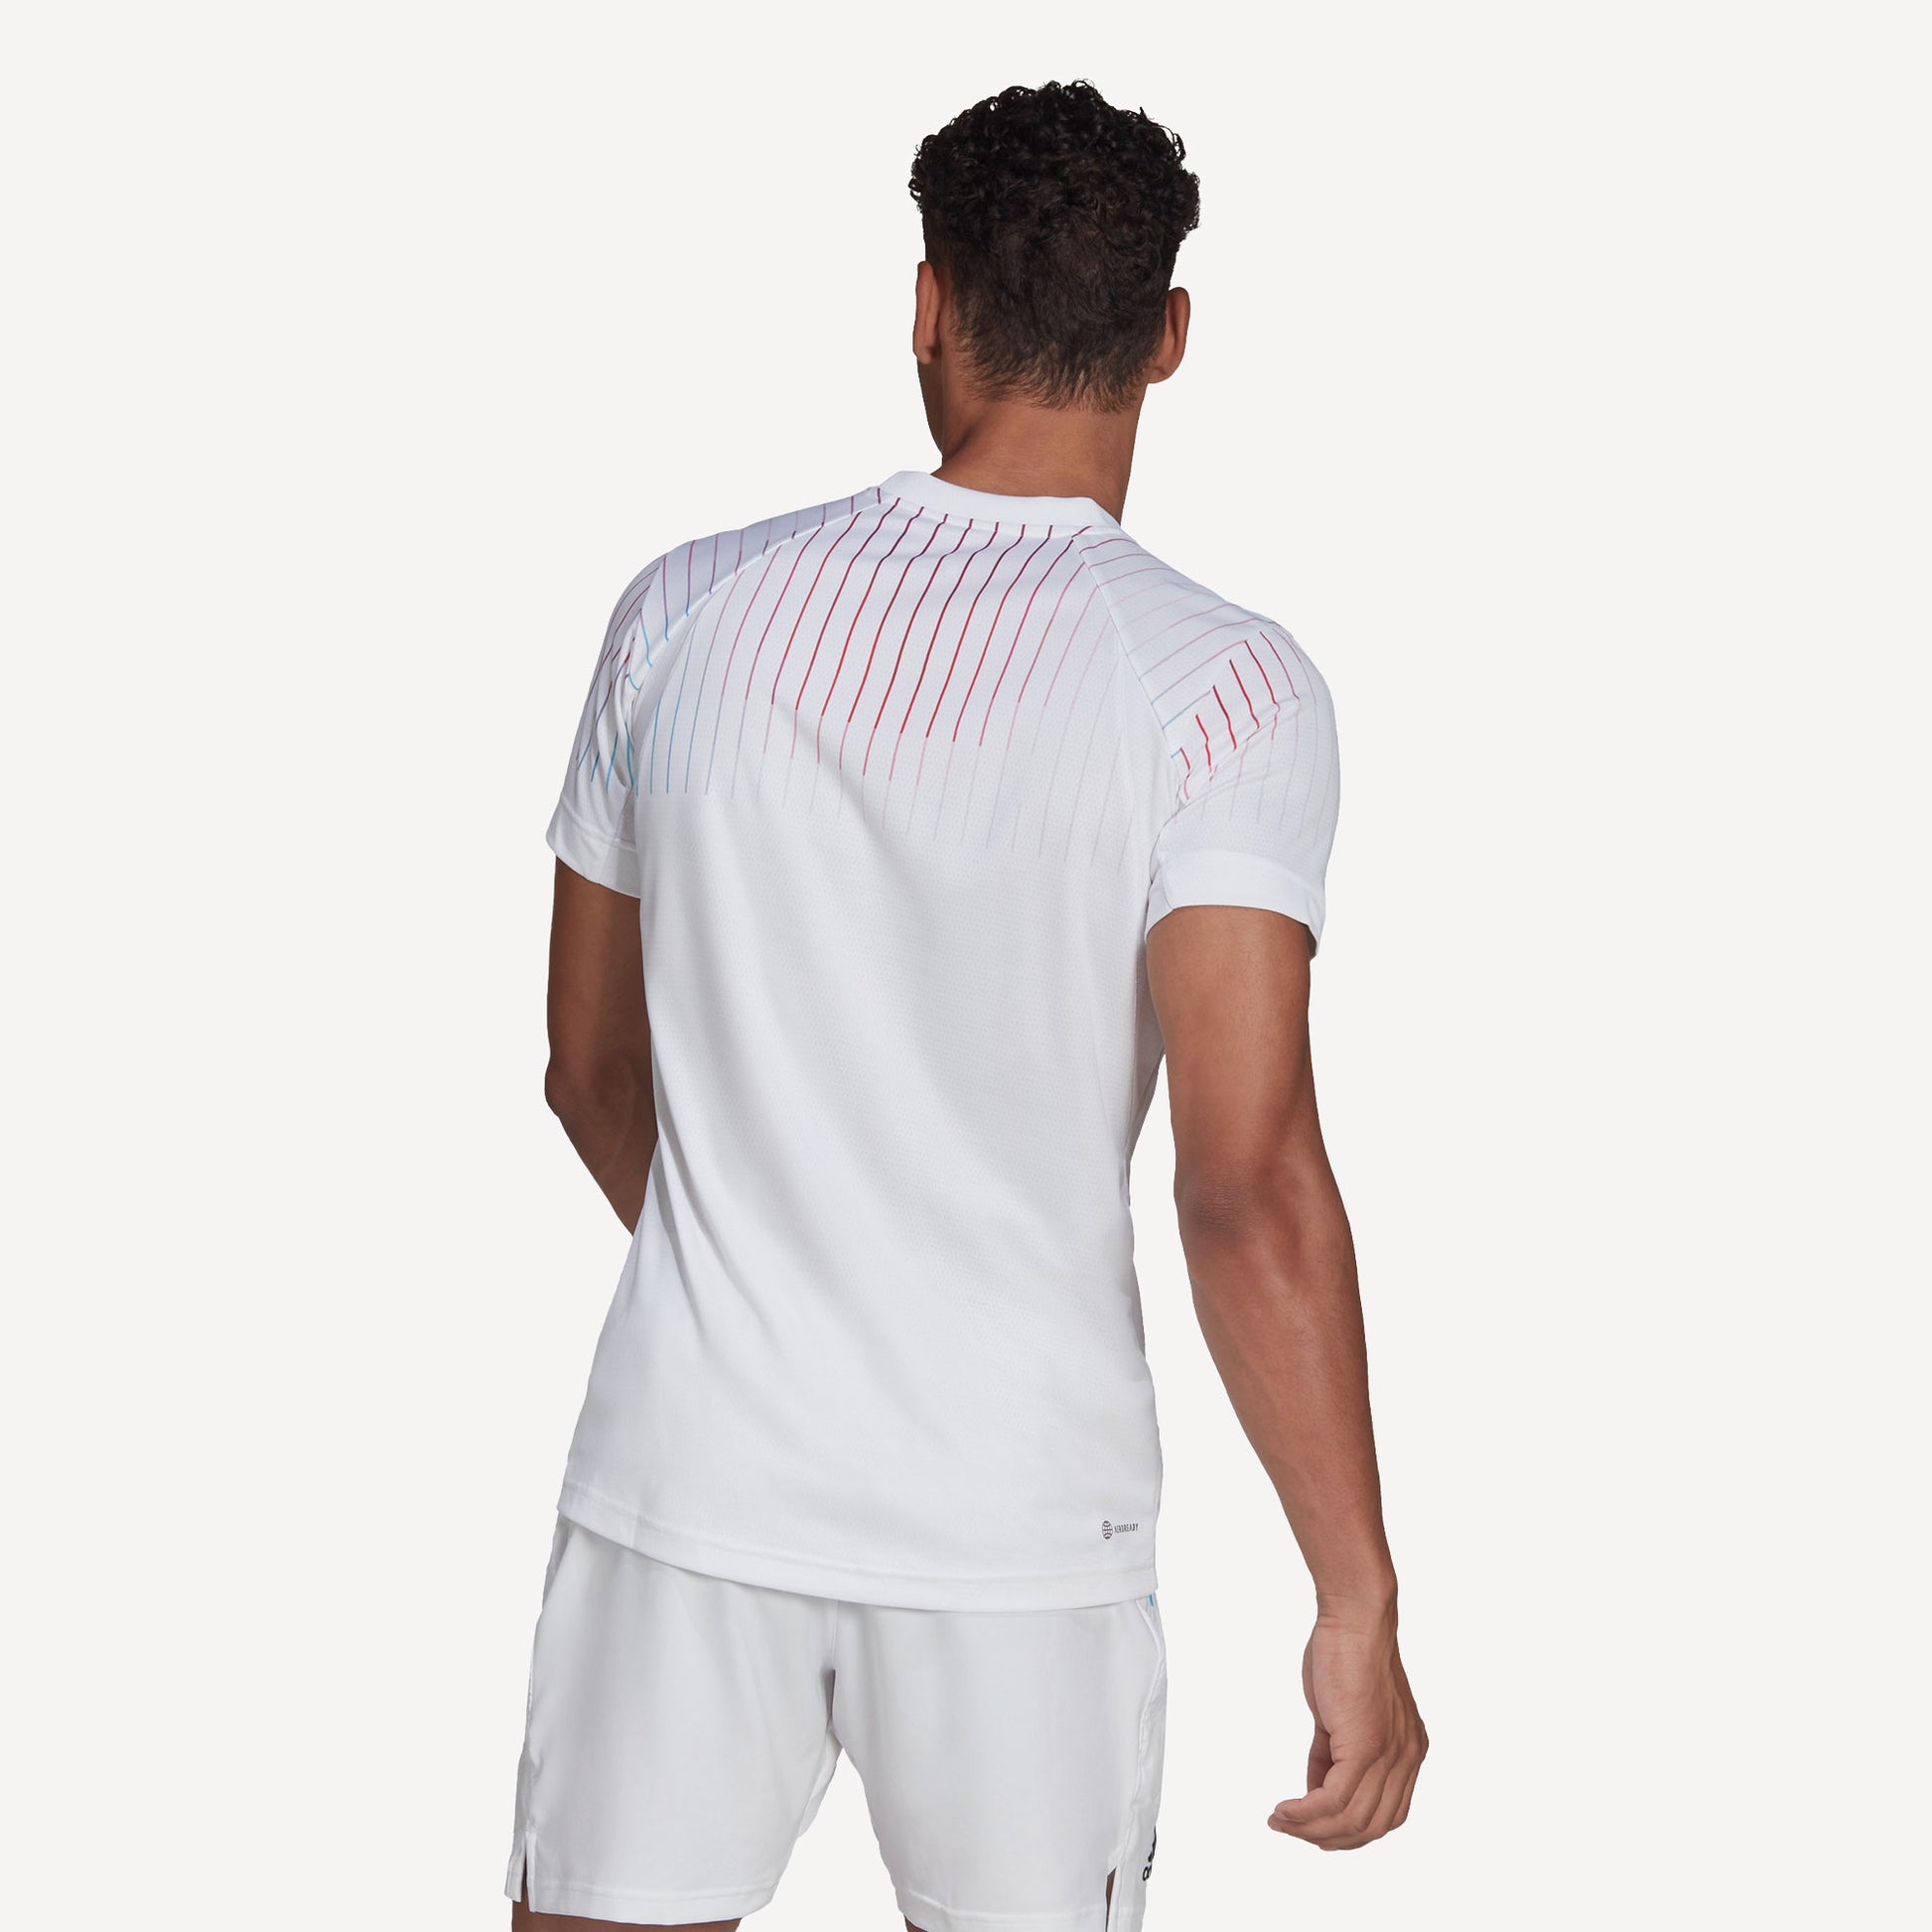 adidas Melbourne Freelift Men's Tennis Shirt White (2)